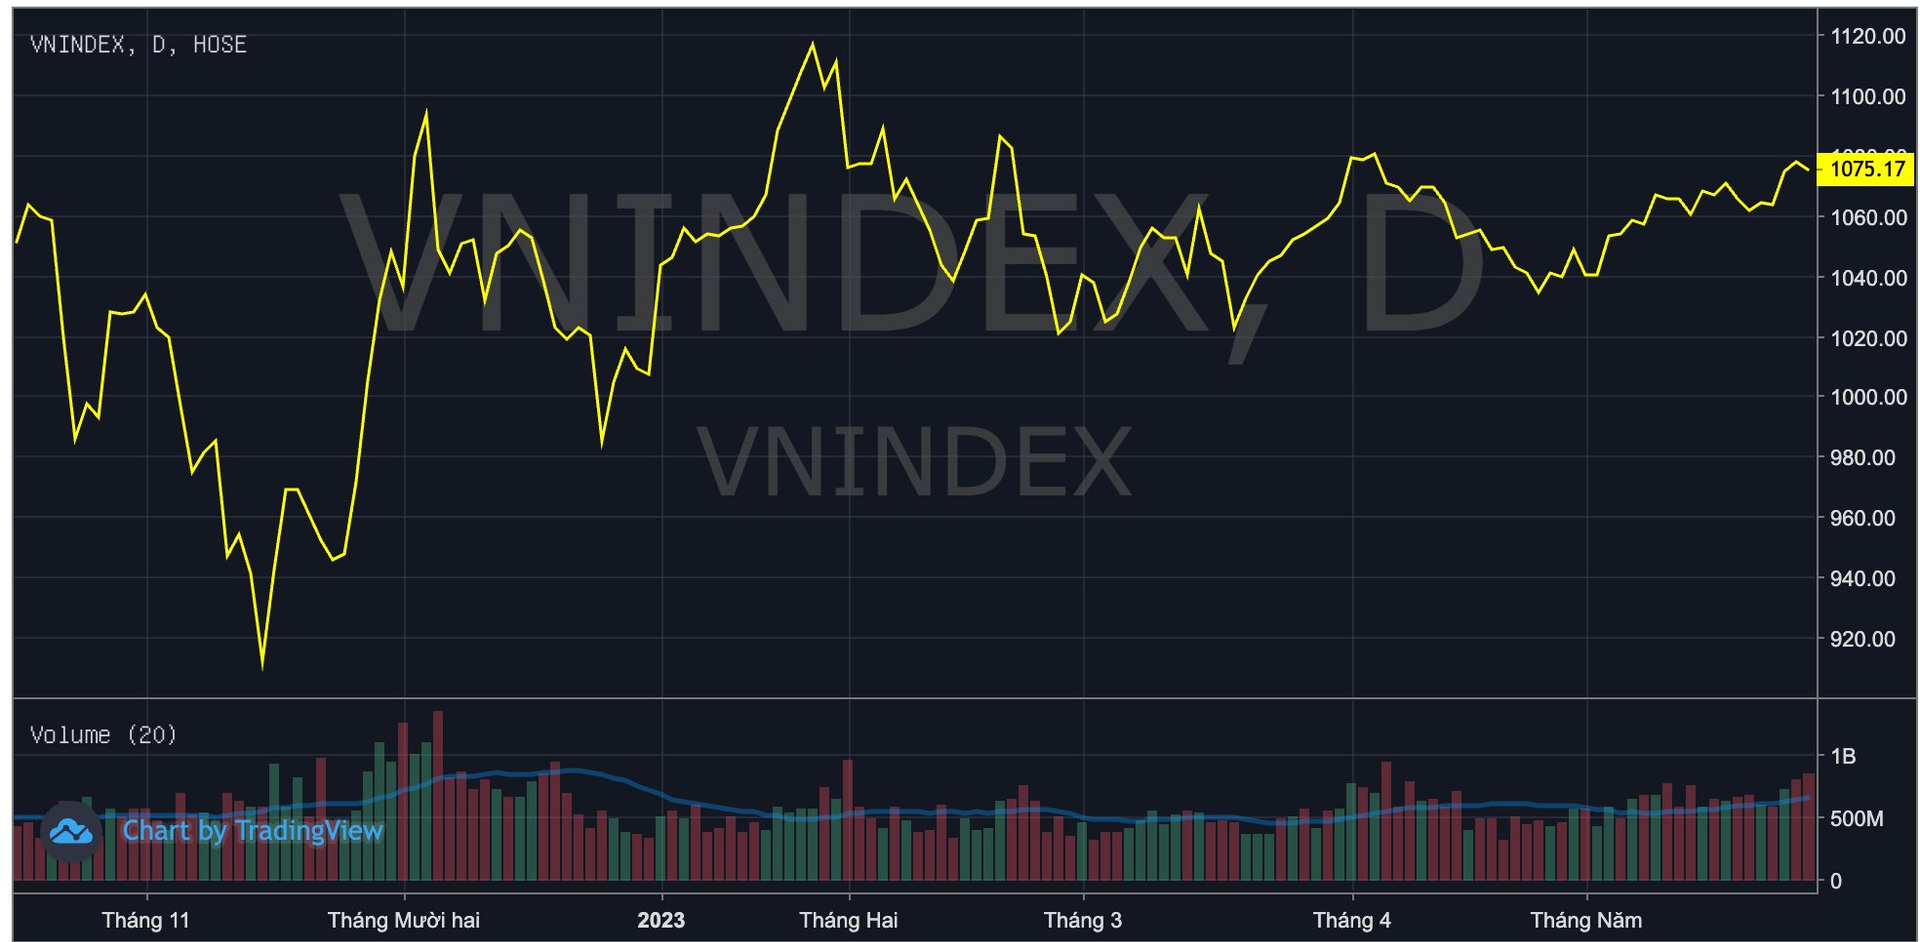 Soi diễn biến thị trường chứng khoán tháng 6: Trong 4/5 năm gần nhất VN-Index đều mất điểm, năm nay liệu có ngược dòng? - Ảnh 1.